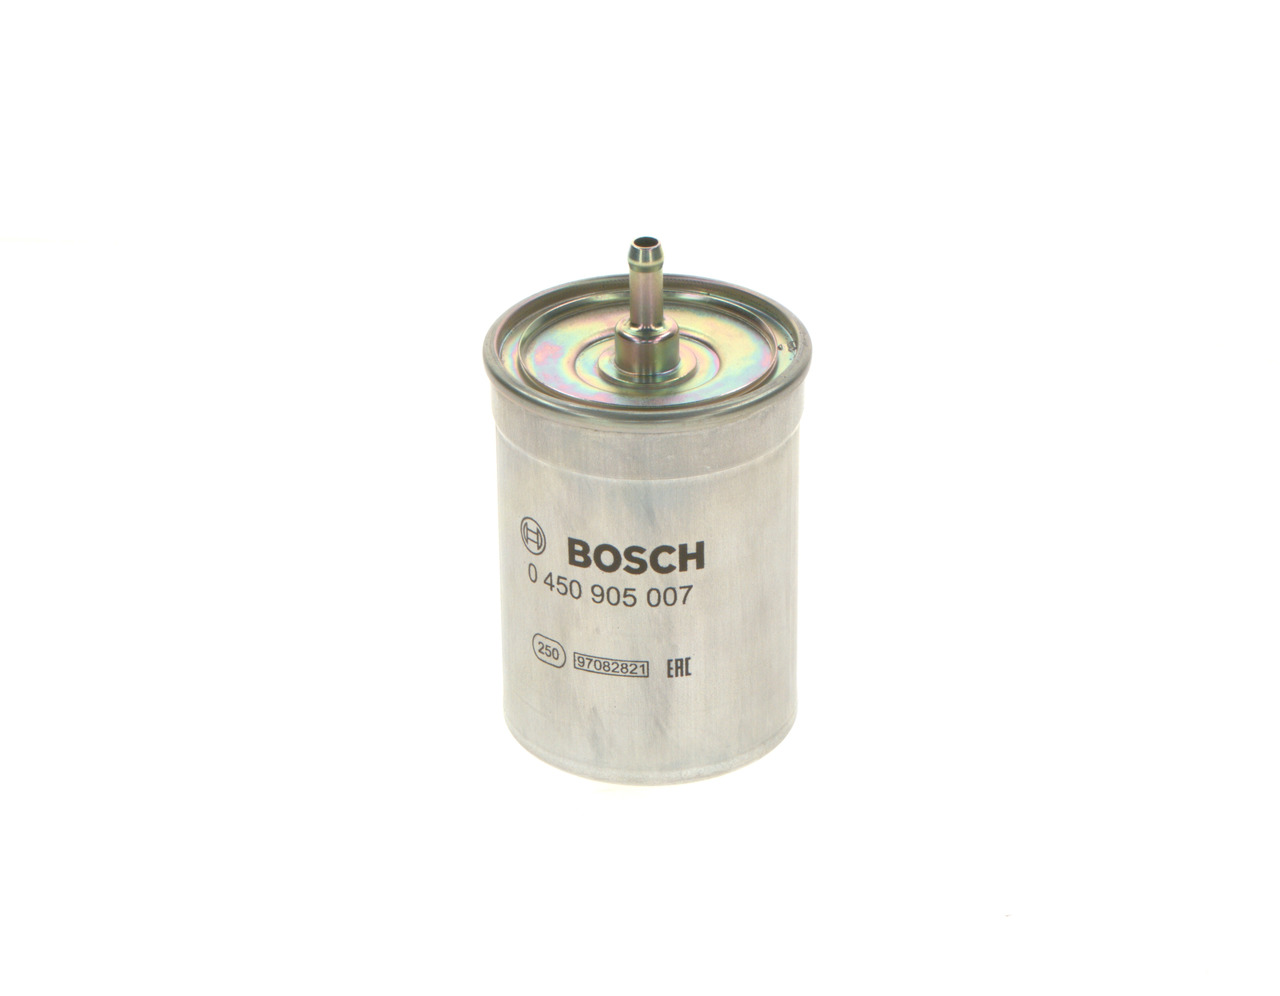 BOSCH 0 450 905 007 Fuel filter In-Line Filter, 8mm